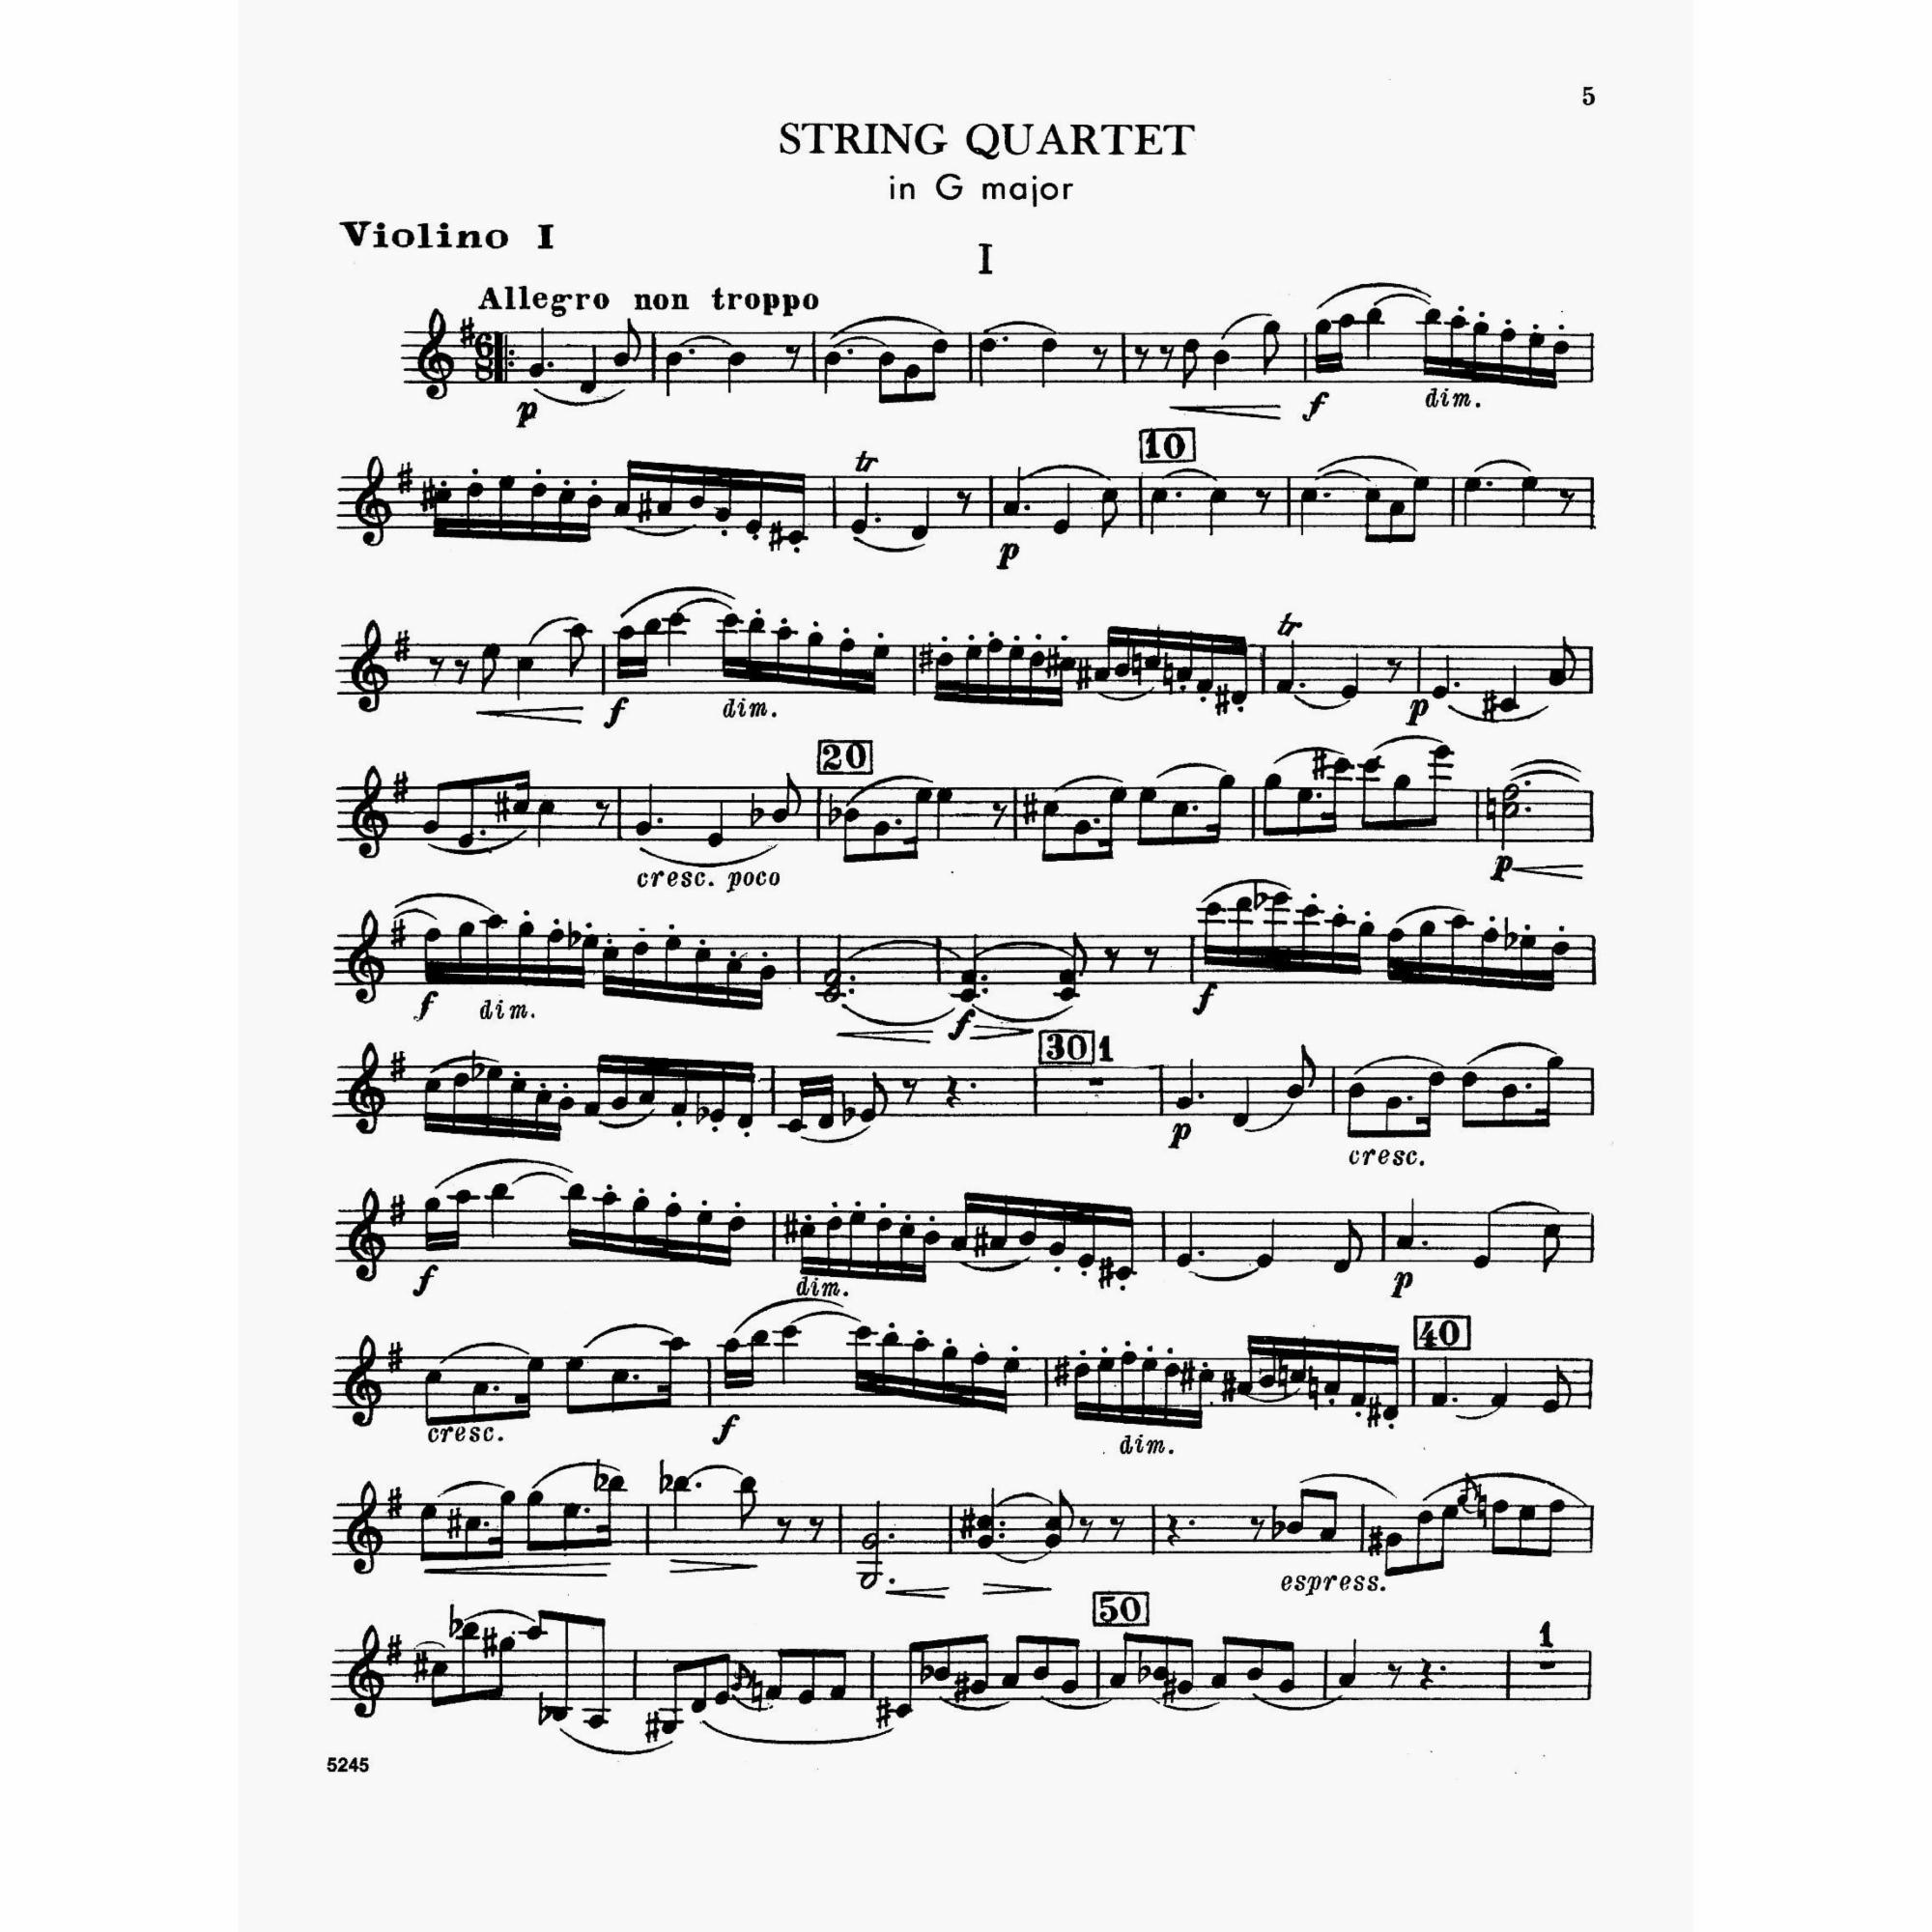 Sample: Violin I (Pg. 5)